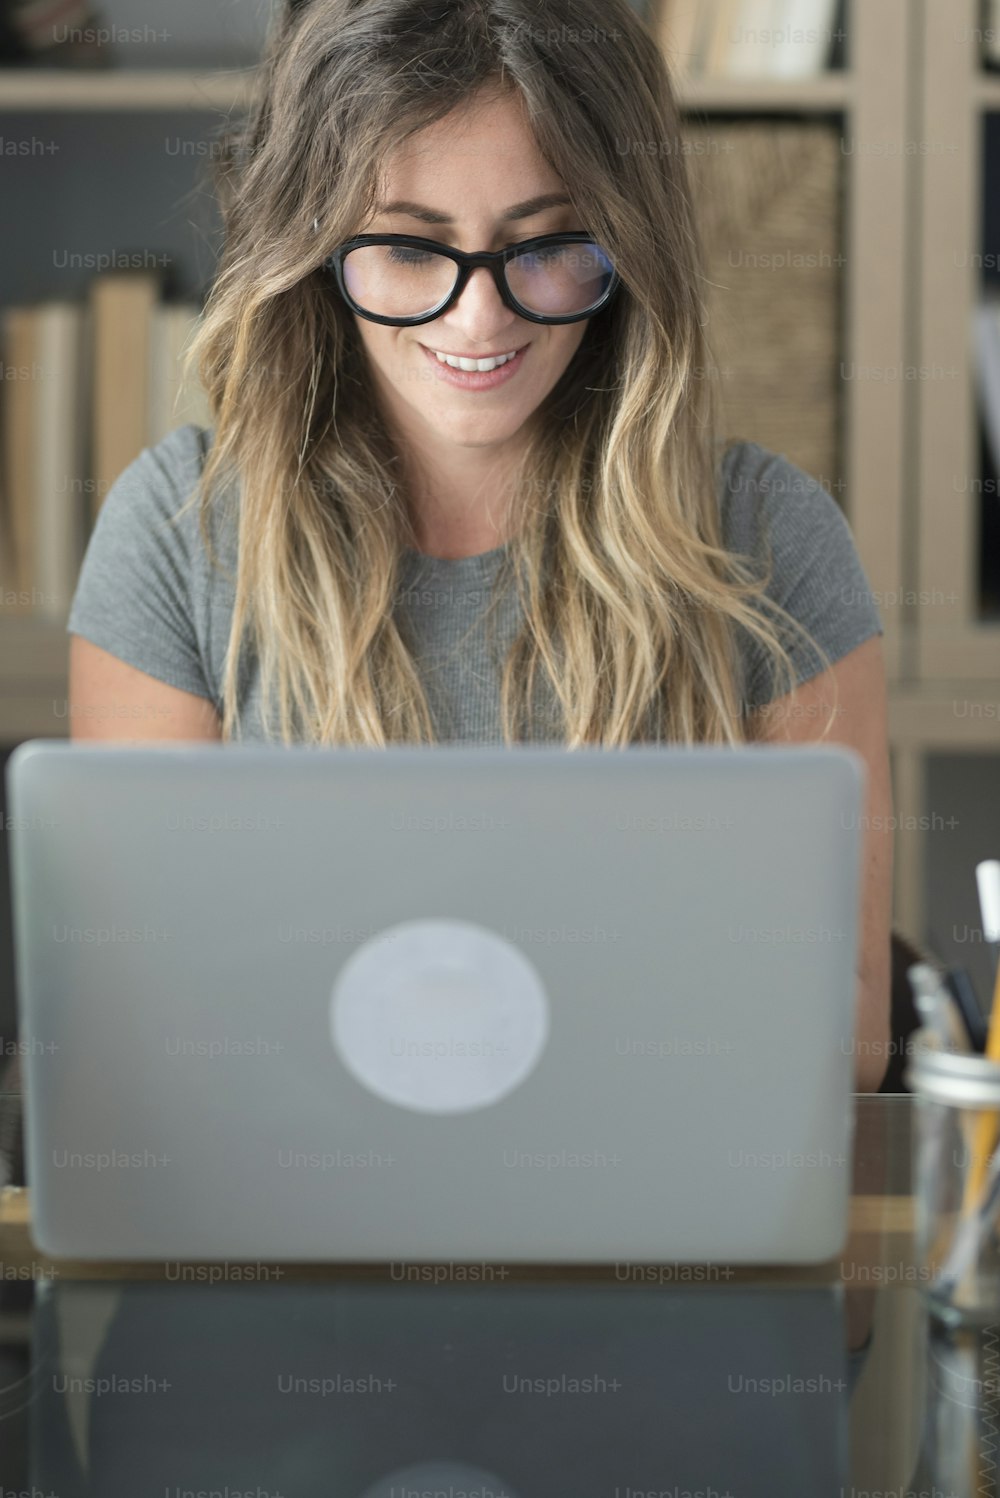 Mulher bonita com óculos de óculos trabalho em casa no computador portátil - pessoas do sexo feminino de trabalho inteligente na mesa do escritório olhando para o monitor - conceito de estilo de vida profissional moderno freelance trabalho